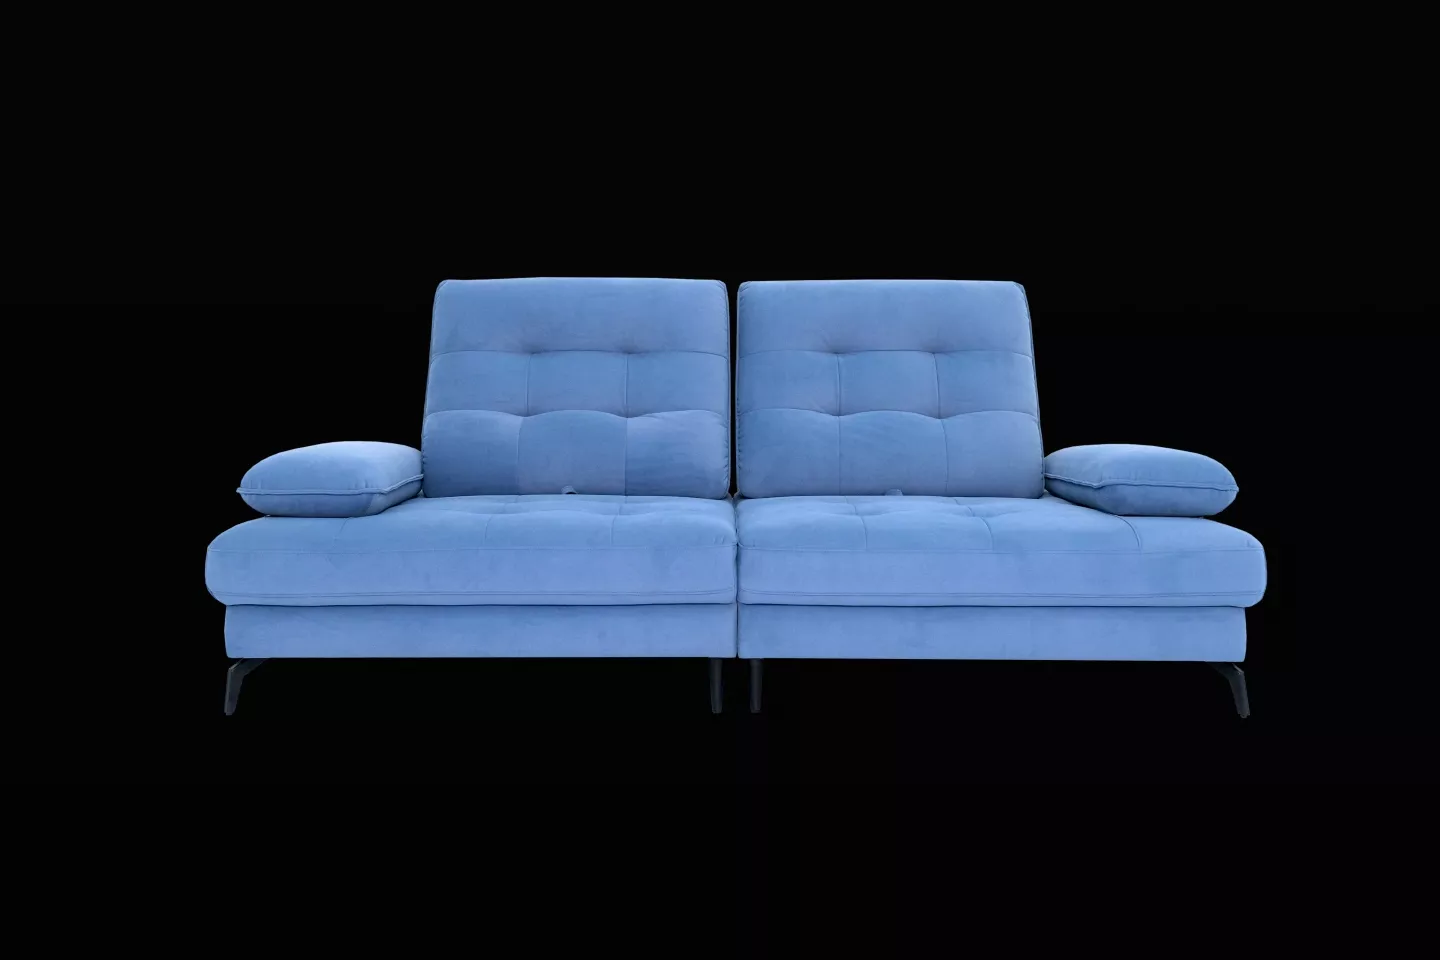 功能型布沙發 蒂尼TINI S2307型 整體沙發實際拍攝照片